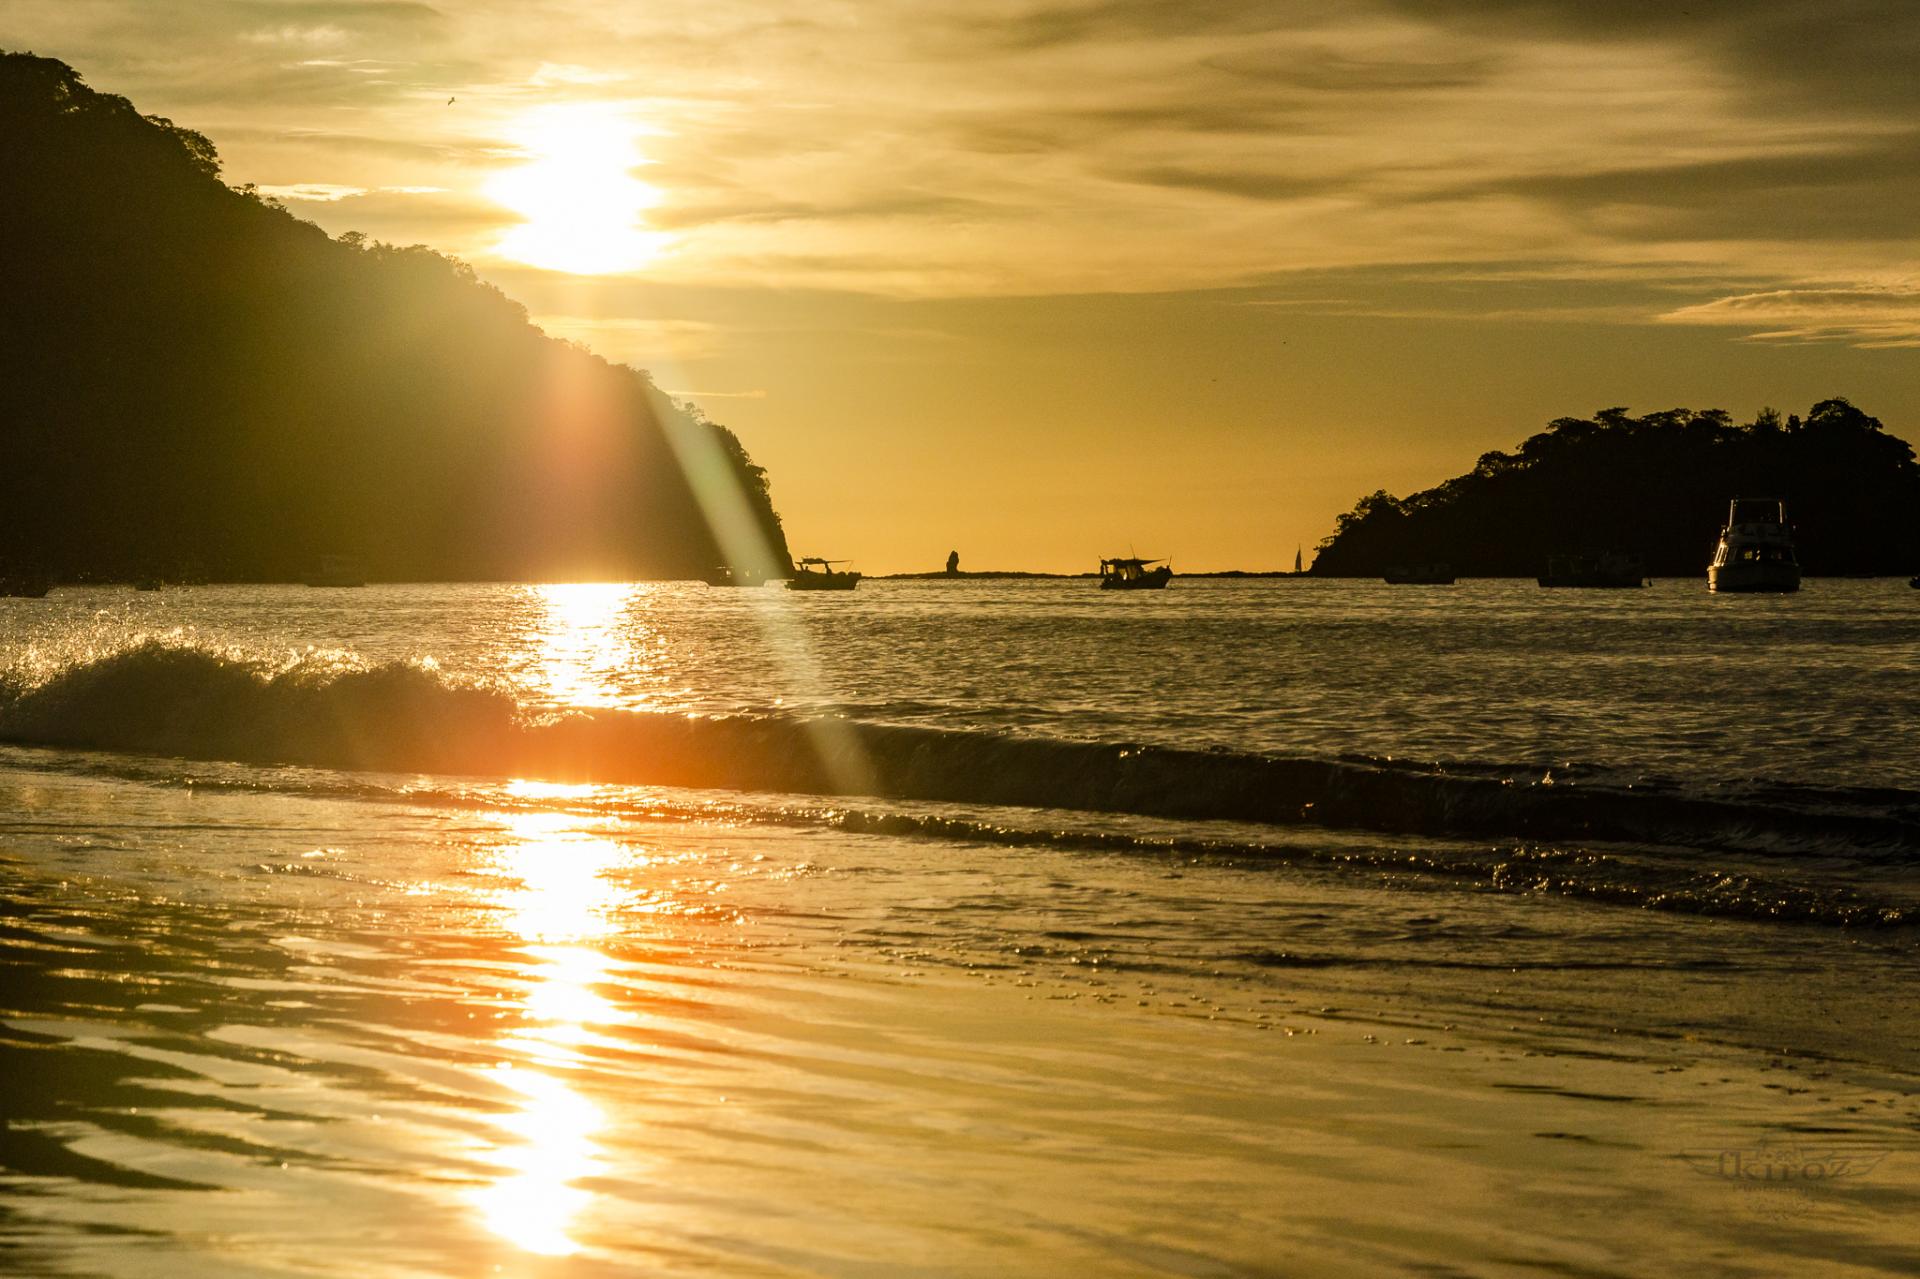 Erleben Sie die schönen Sonnenuntergänge auf einer Reise in Costa Rica